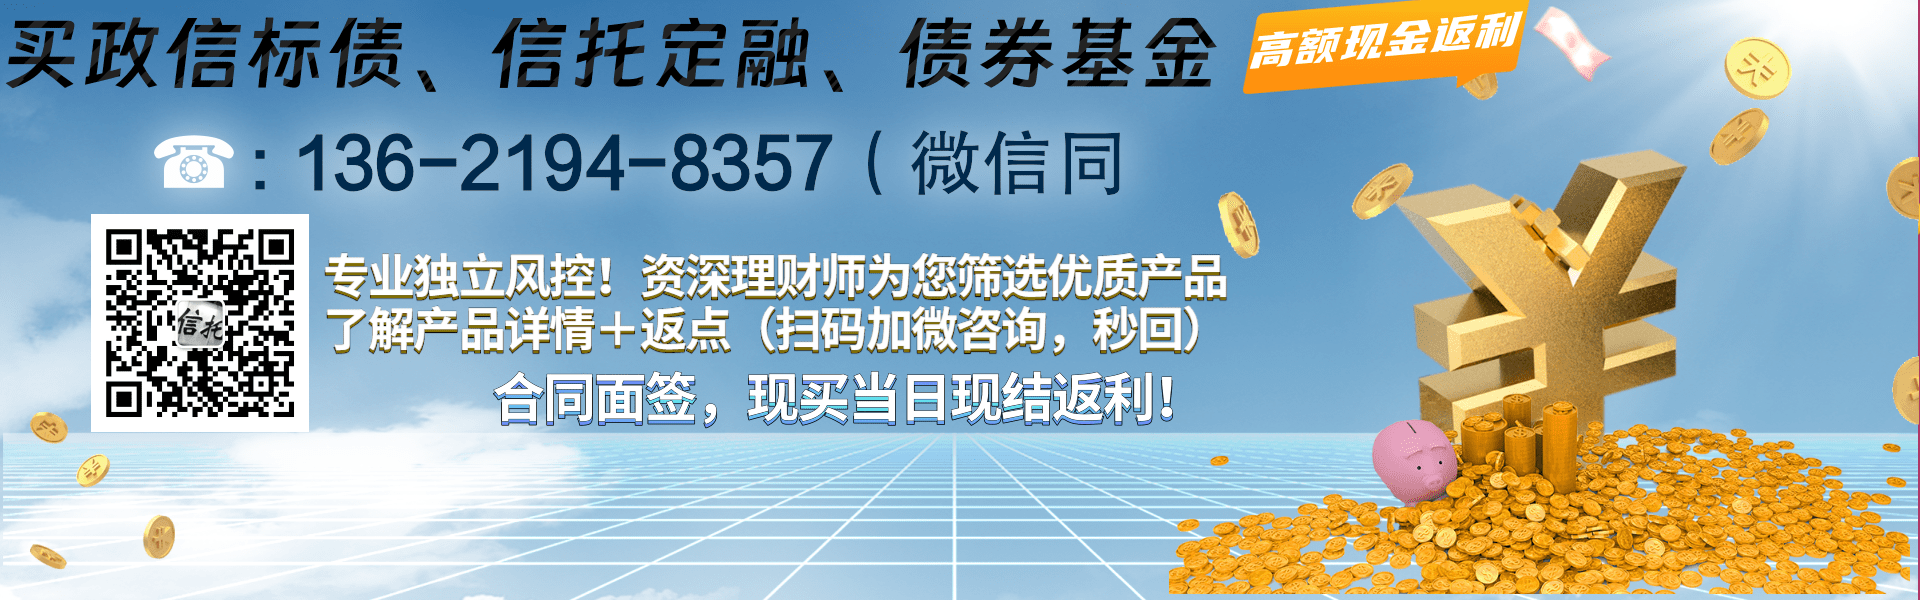 1年期_重庆鸿业实业债权资产项目